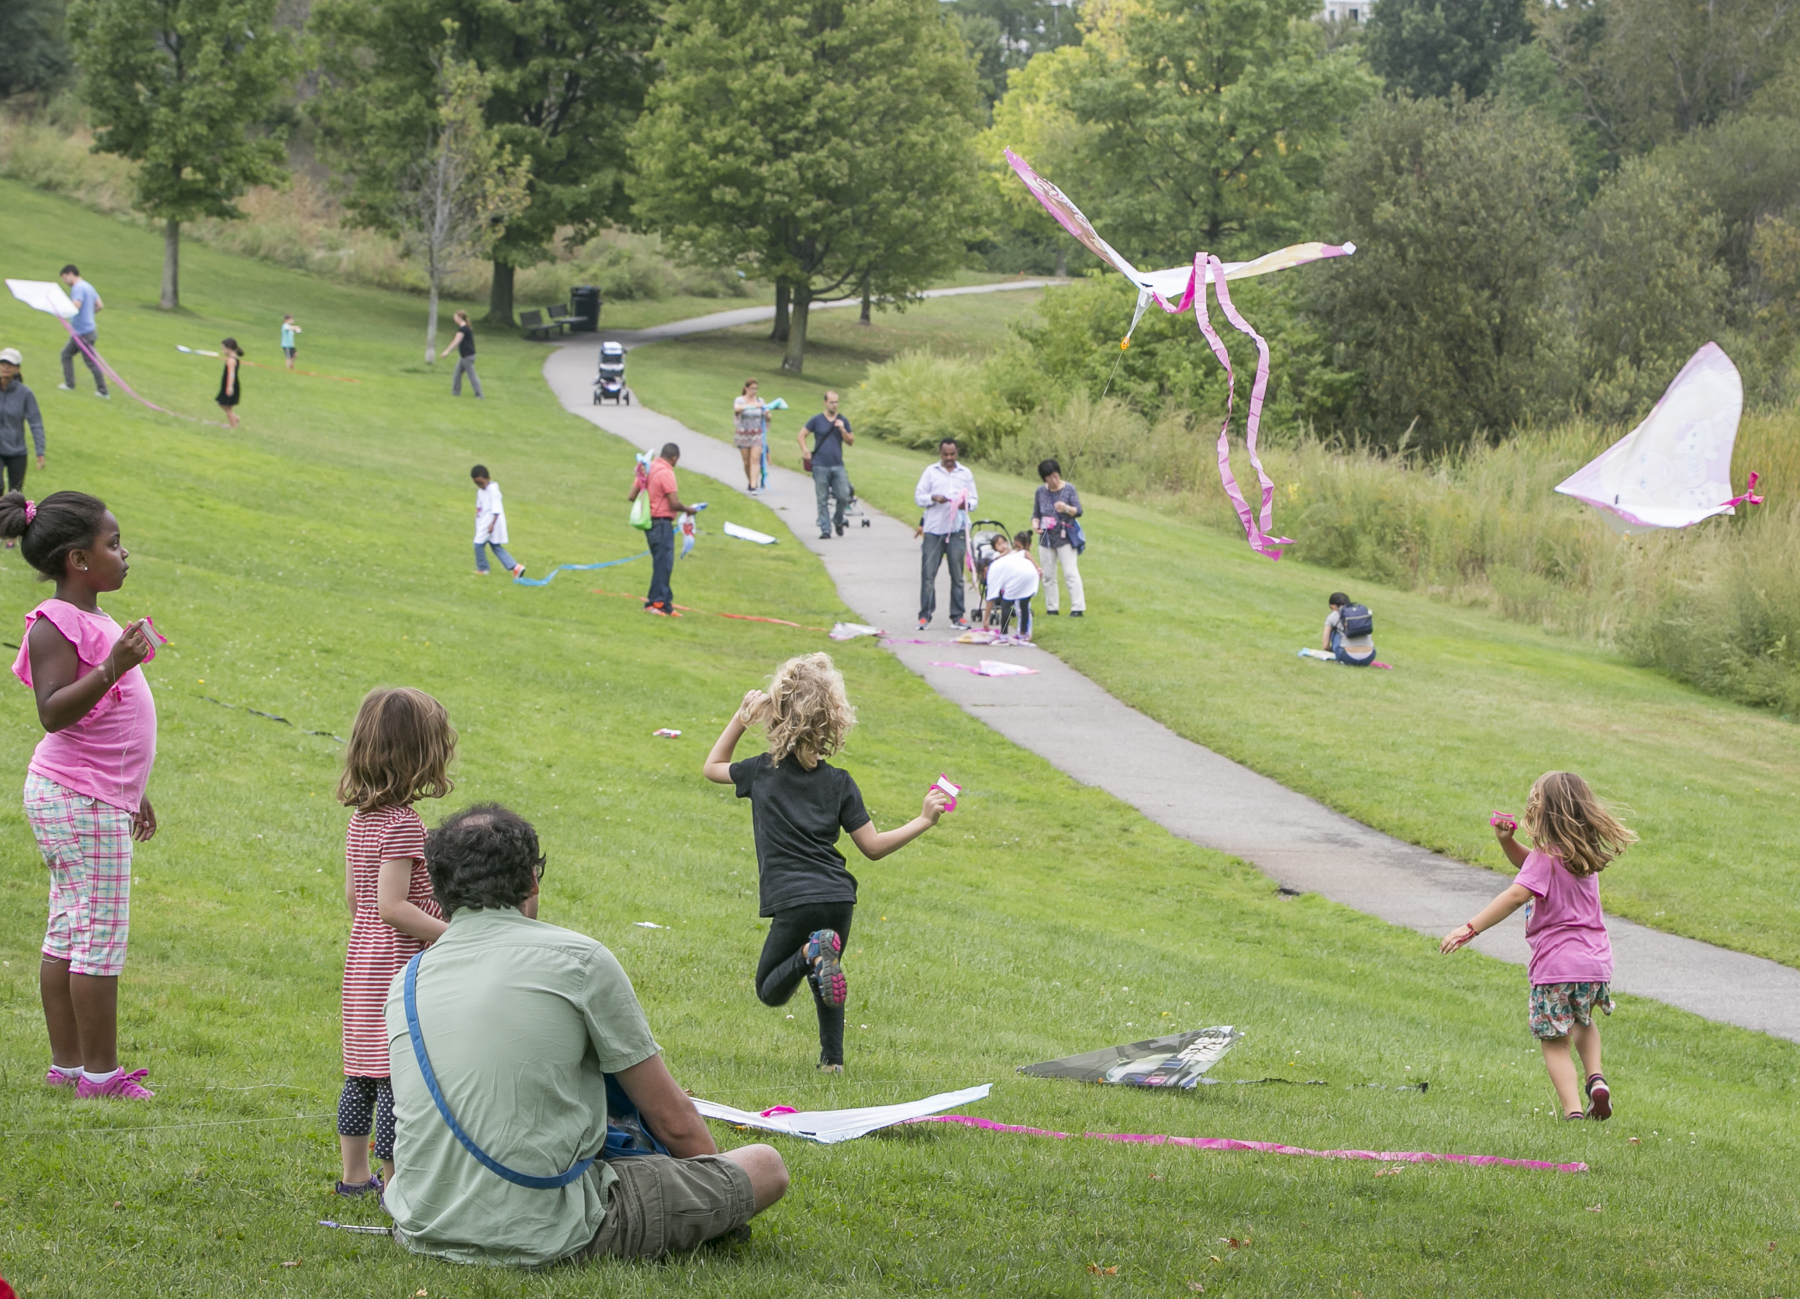 Children flying kites at Danehy Park